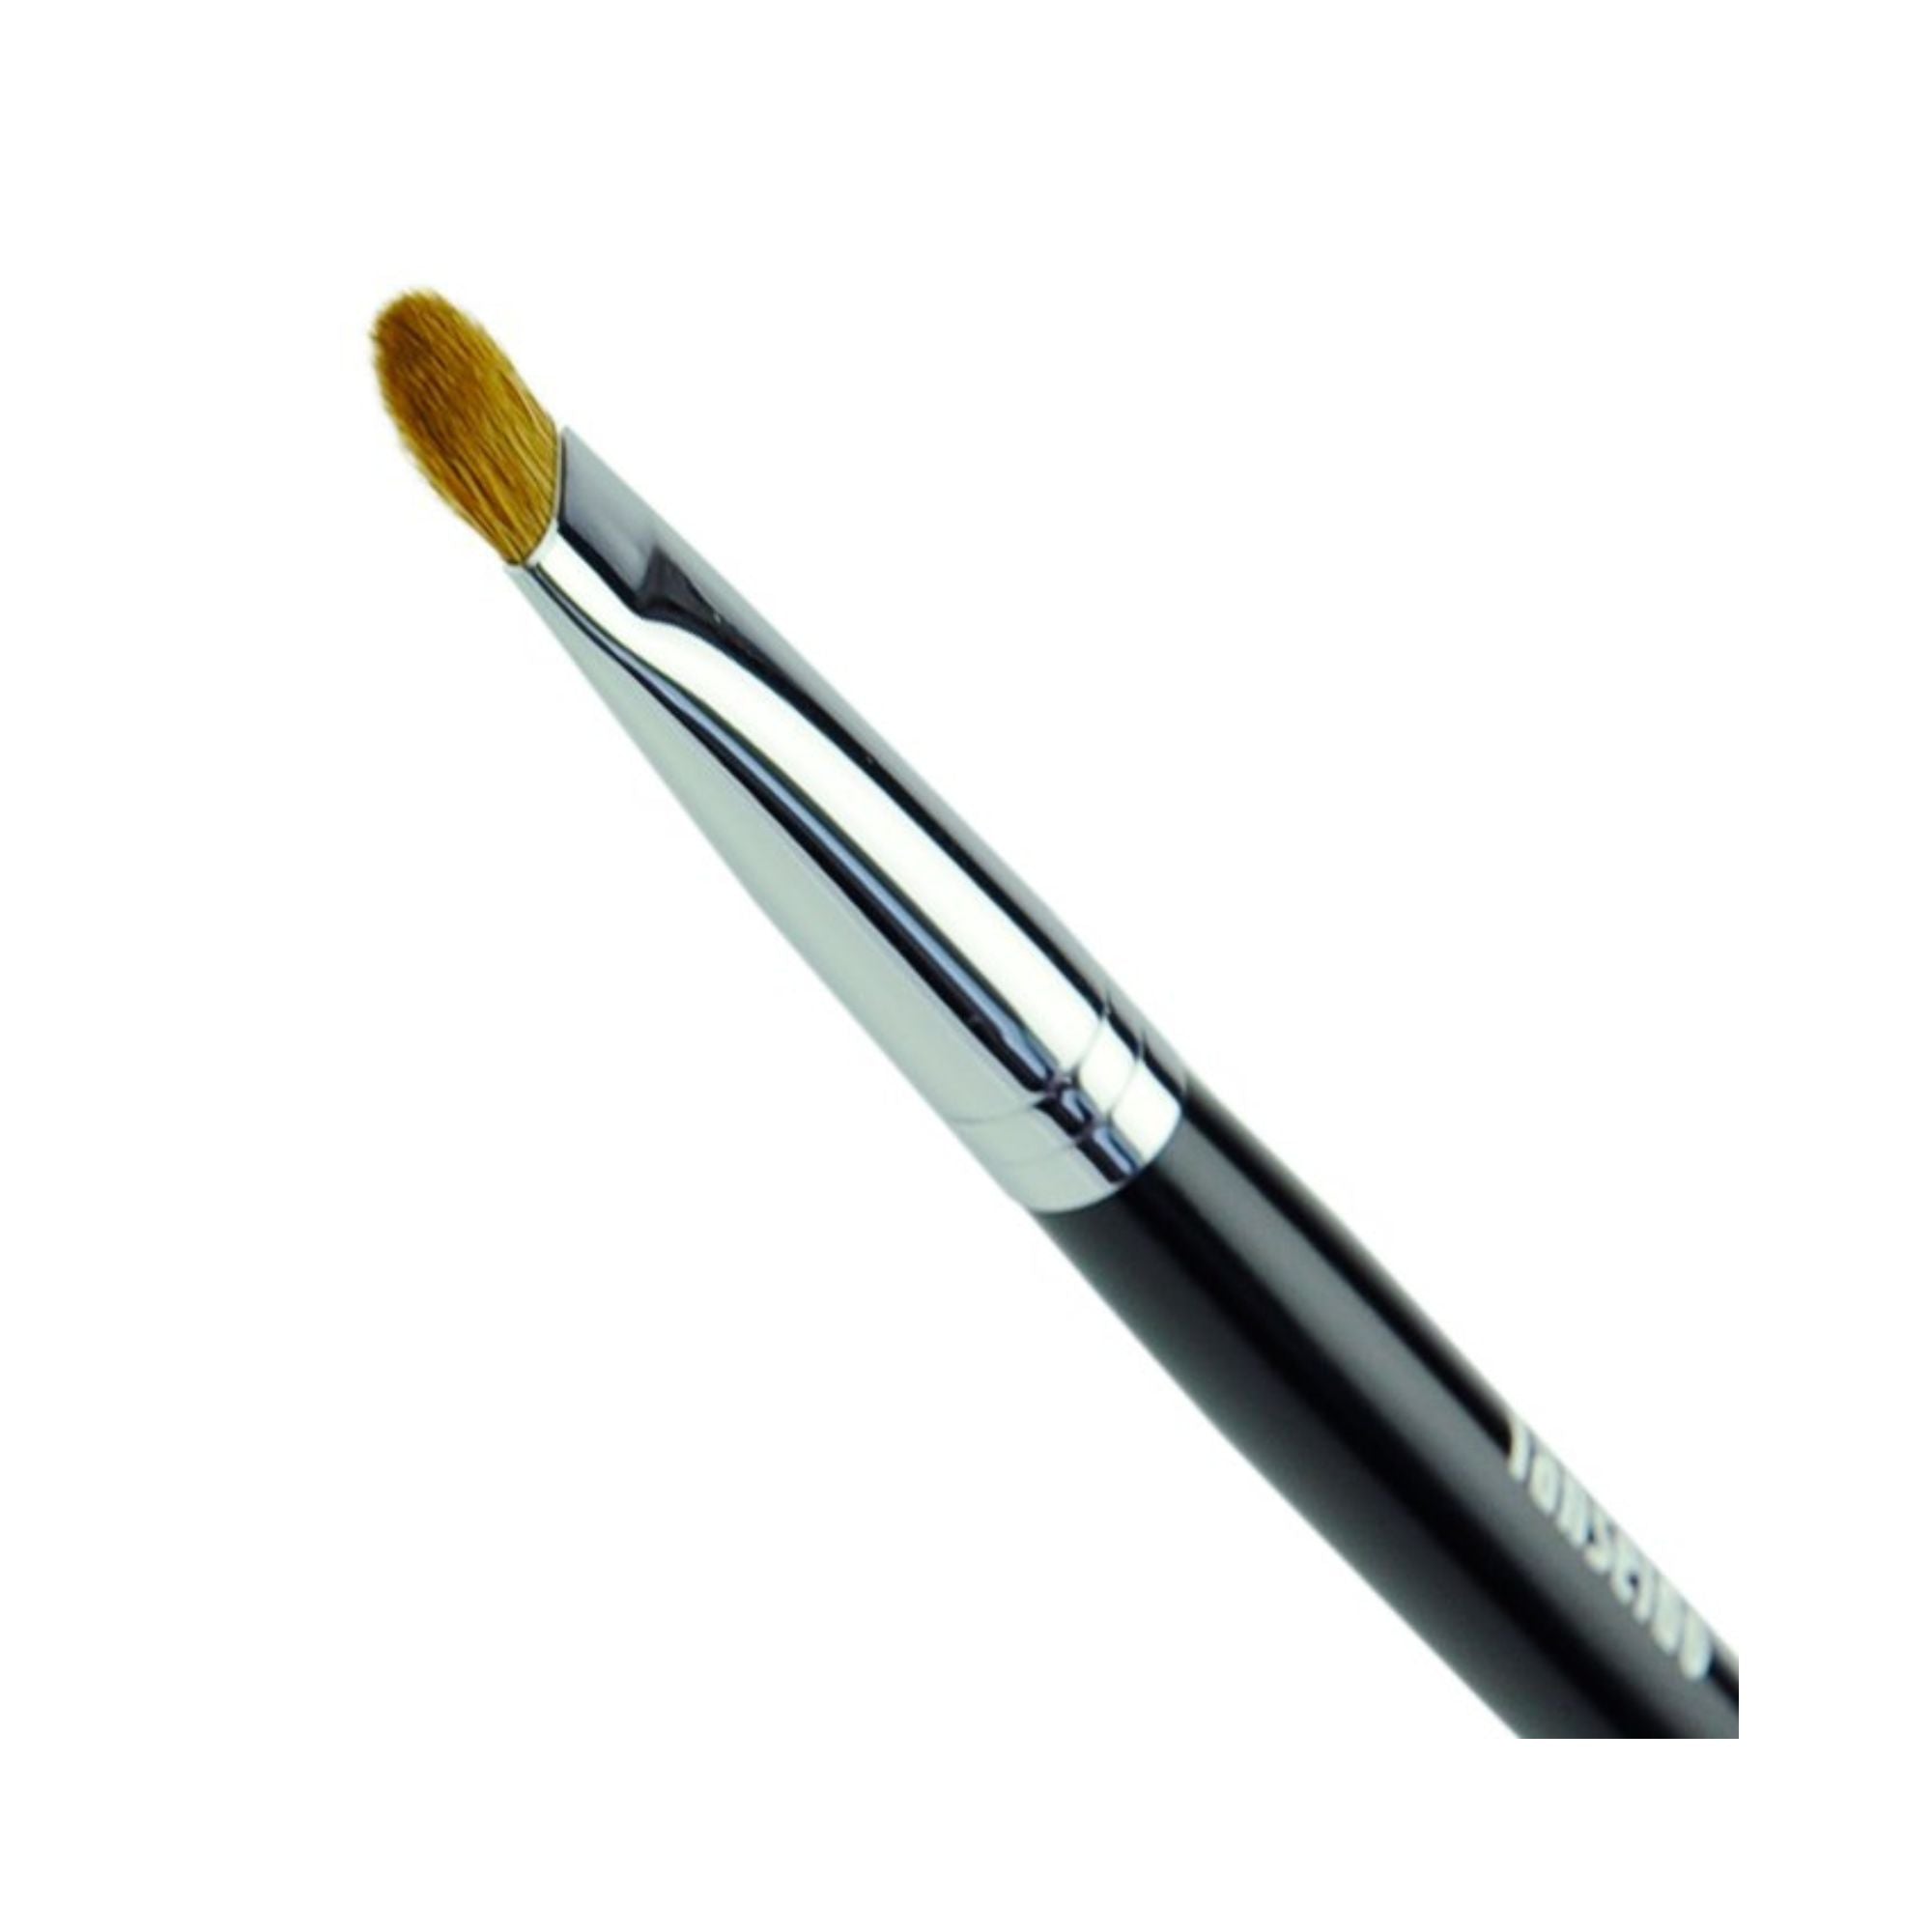 Tanseido Eyeshadow Brush YWQ7T - Fude Beauty, Japanese Makeup Brushes